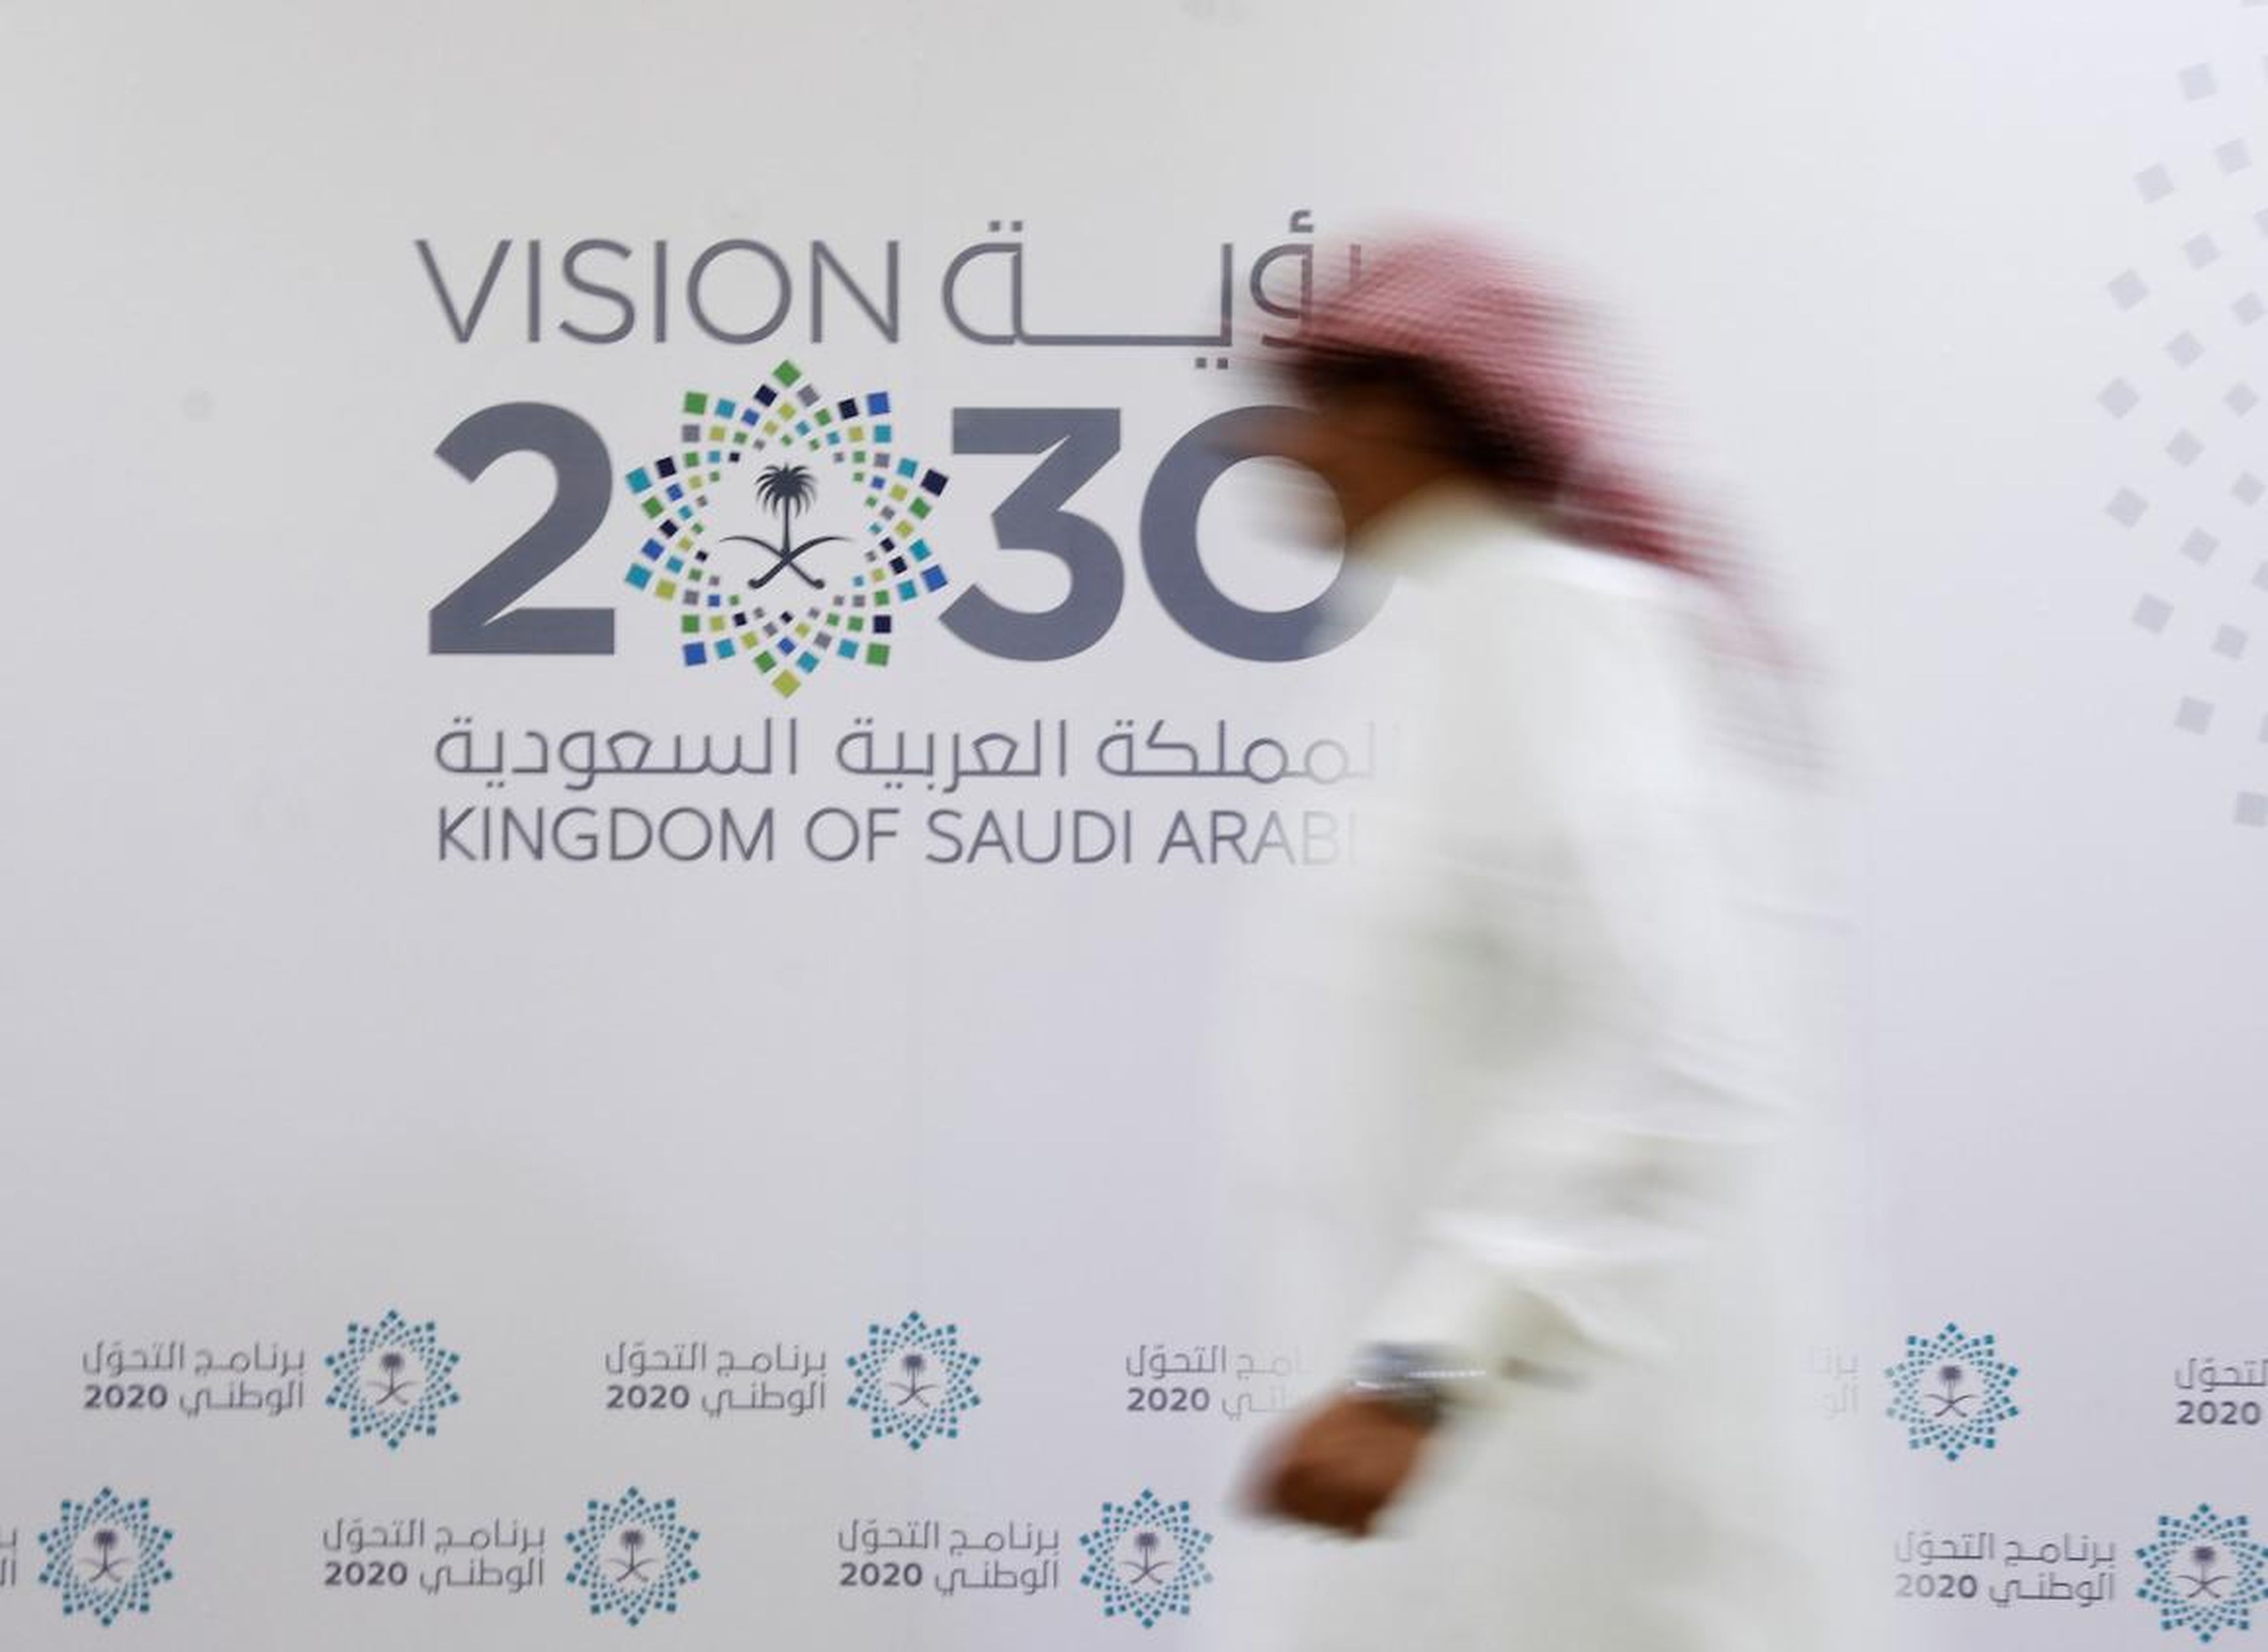 Un hombre saudí pasa junto al logotipo de Visión 2030 después de una conferencia de prensa, en Jeddah, Arabia Saudita, el 7 de junio de 2016.